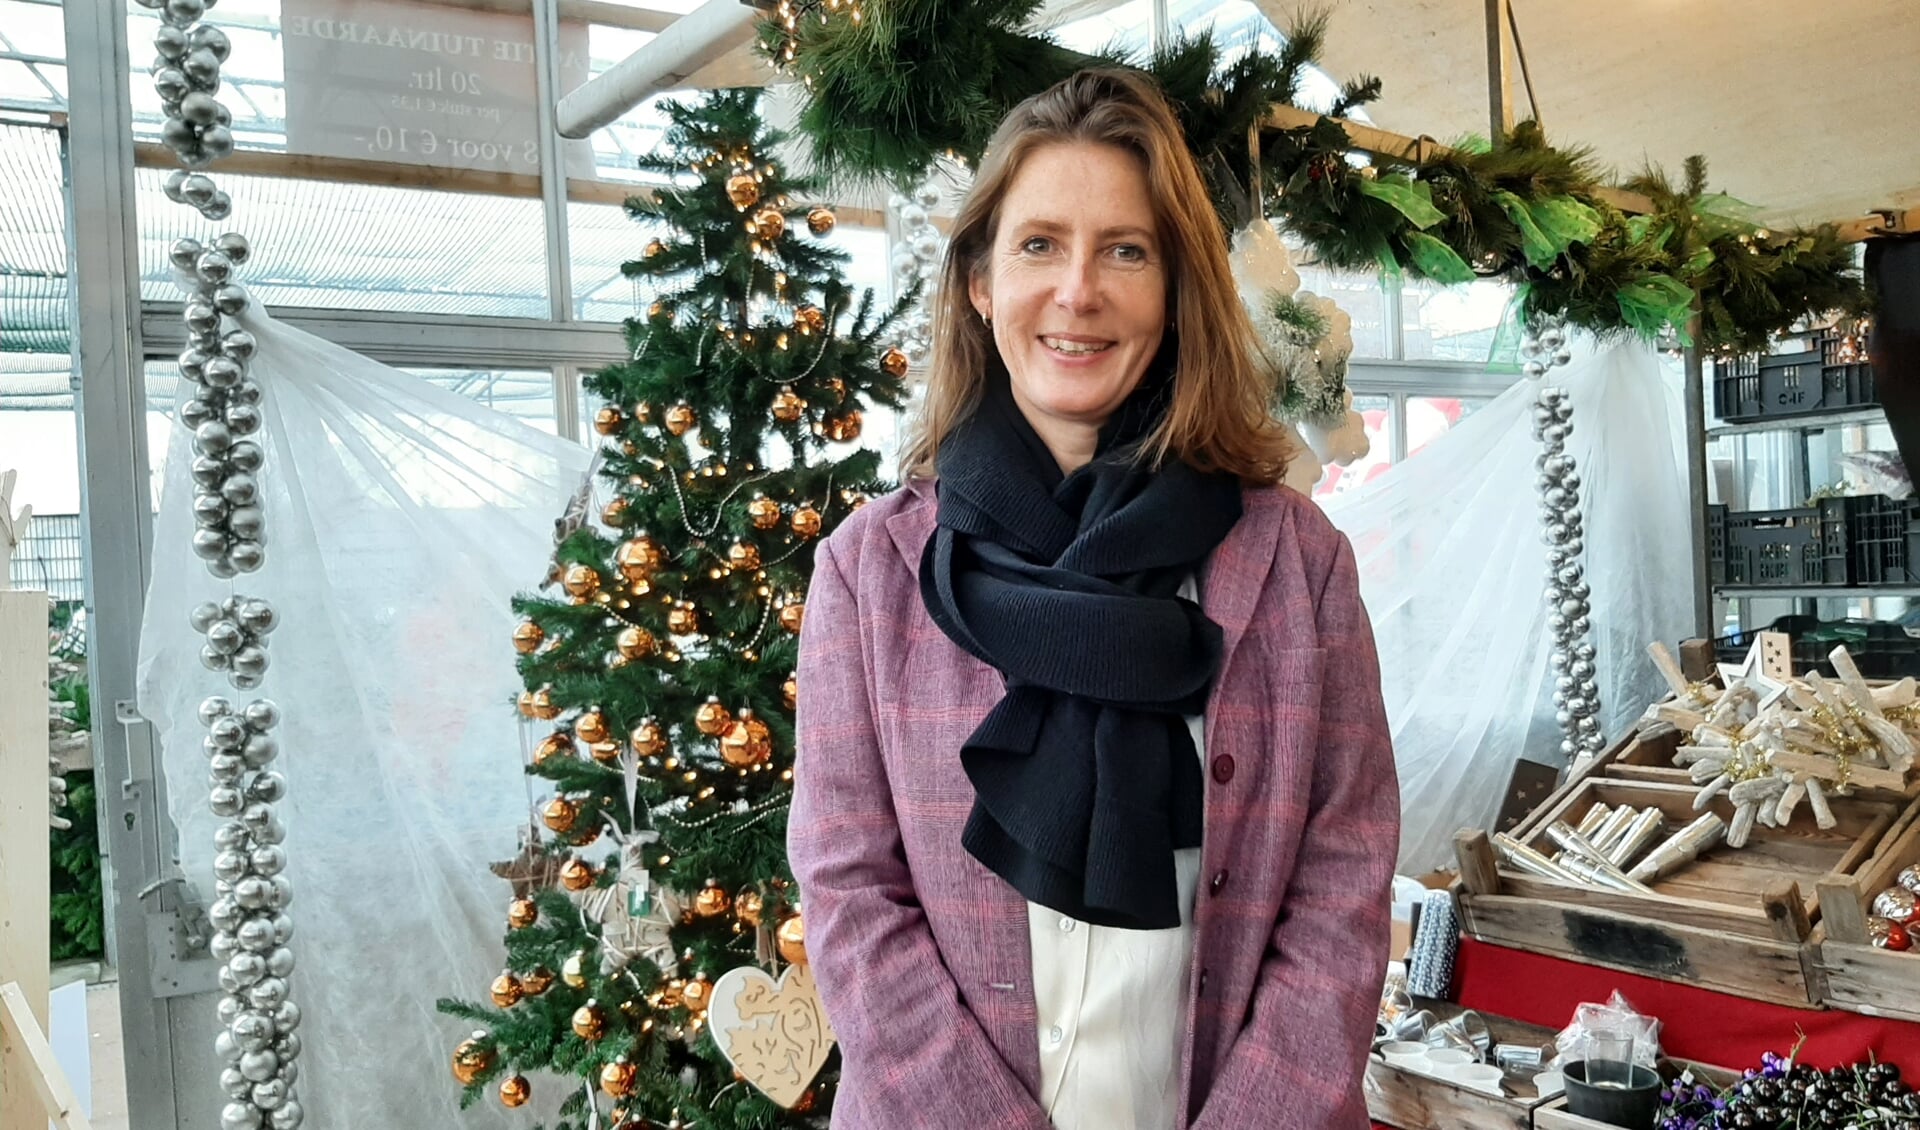 De burgemeester bracht een bezoek aan de kerstmarkt bij Kwekerij Maatwerk, toen alles nog open was. 